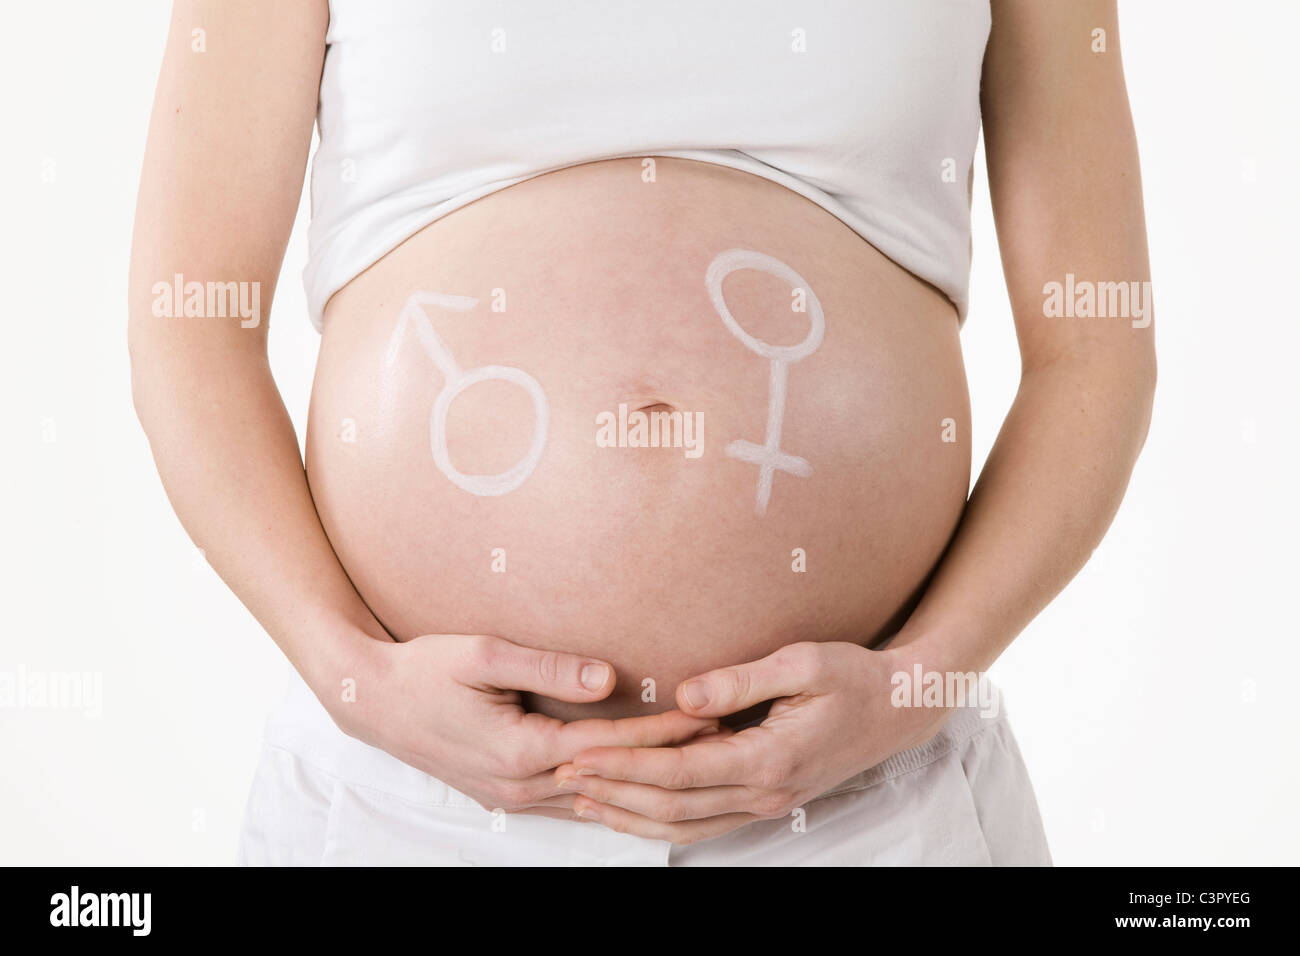 Männliche und weibliche Symbol gezeichnet auf einer schwangeren Bauch, Mittelteil Stockfoto